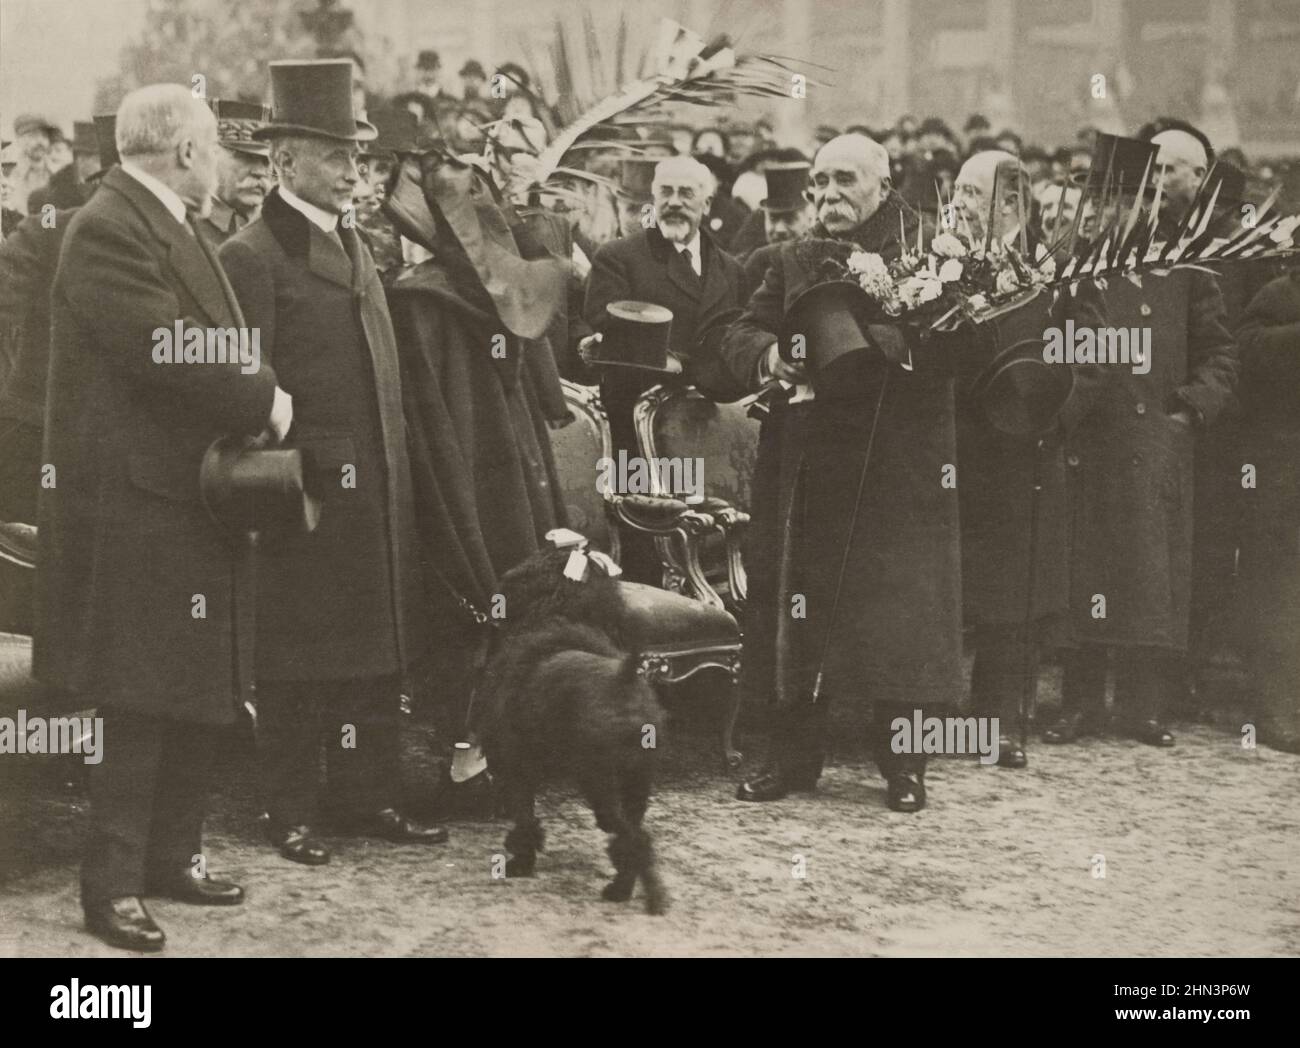 La photo vintage de Clemenceau reçoit des fleurs lors des manifestations de paix à Paris. Décembre 1918 George Clemenceau, premier ministre français, présente un bouqu Banque D'Images